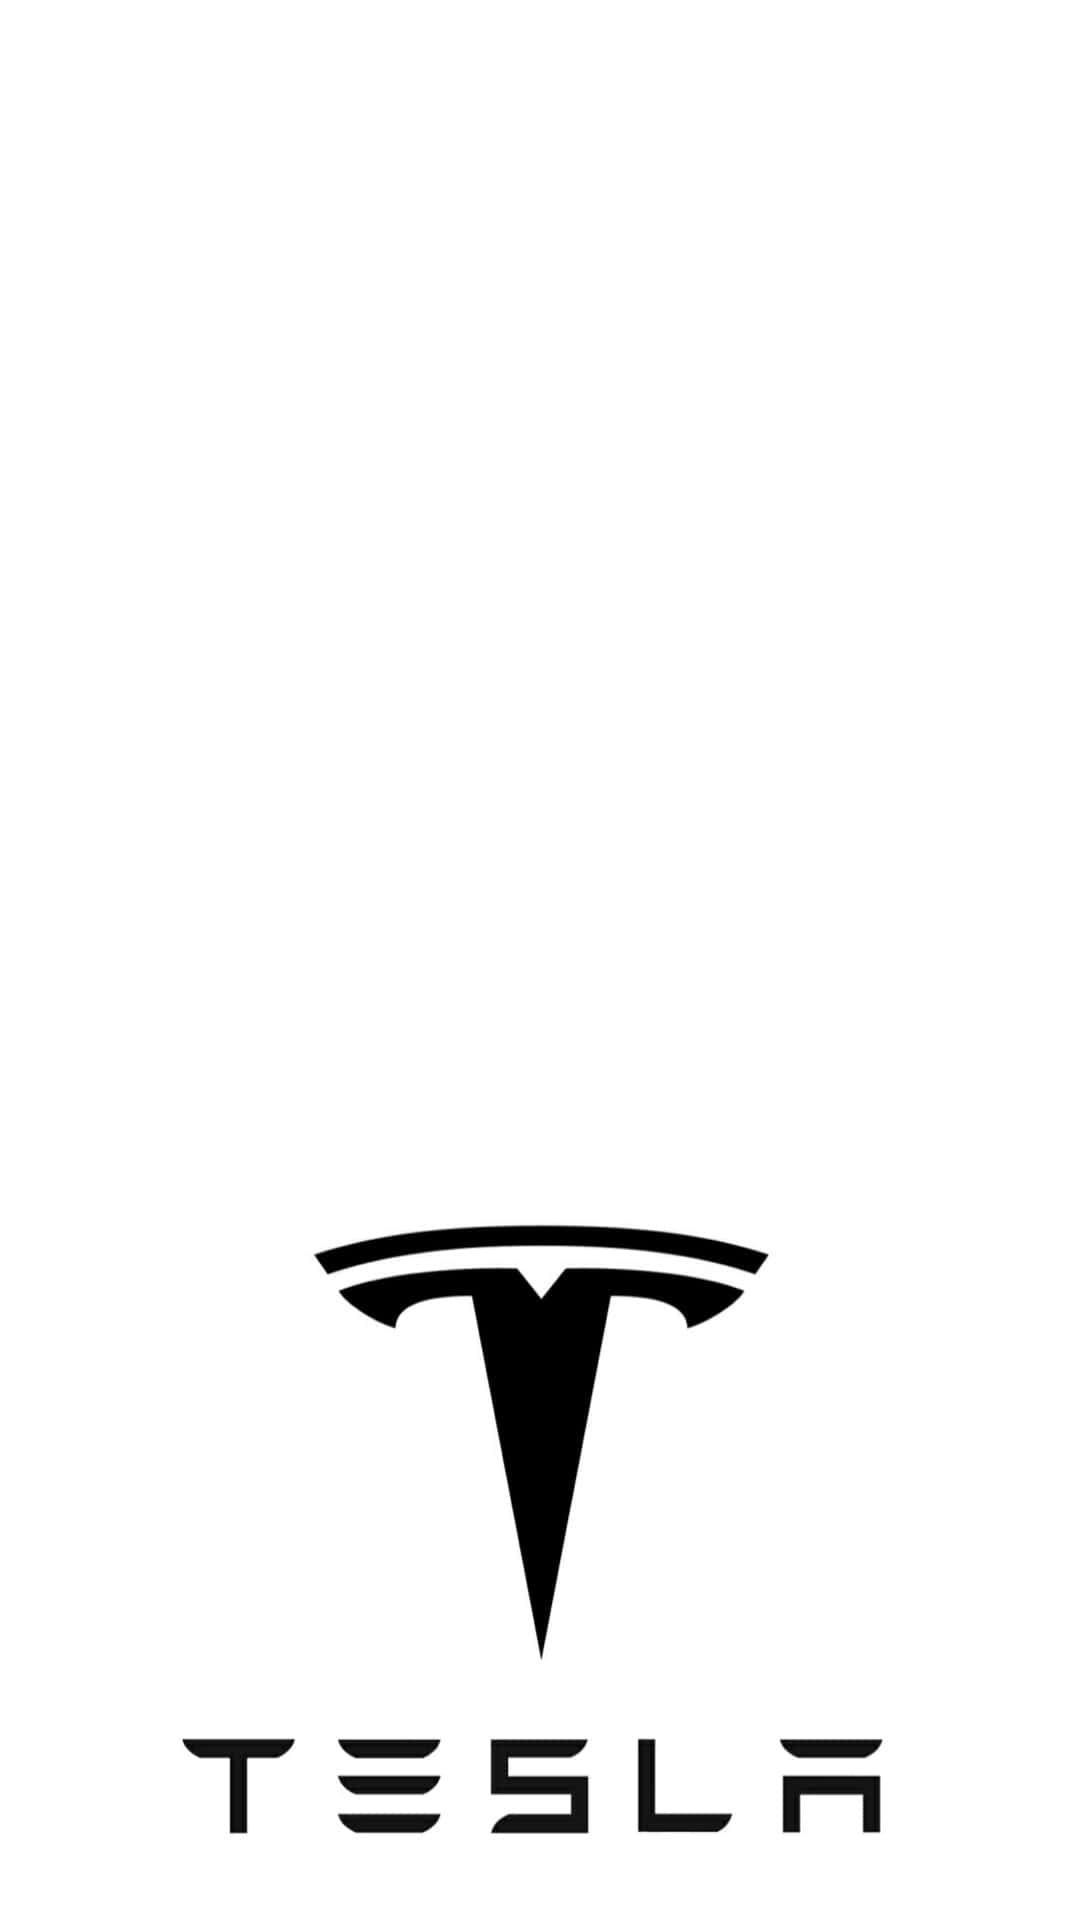 Skräddarsyddabakgrundsbilder För Din Dator Eller Mobiltelefon Med Den Senaste Och Bästa Designen Som Visar Tesla-telefonen. Wallpaper